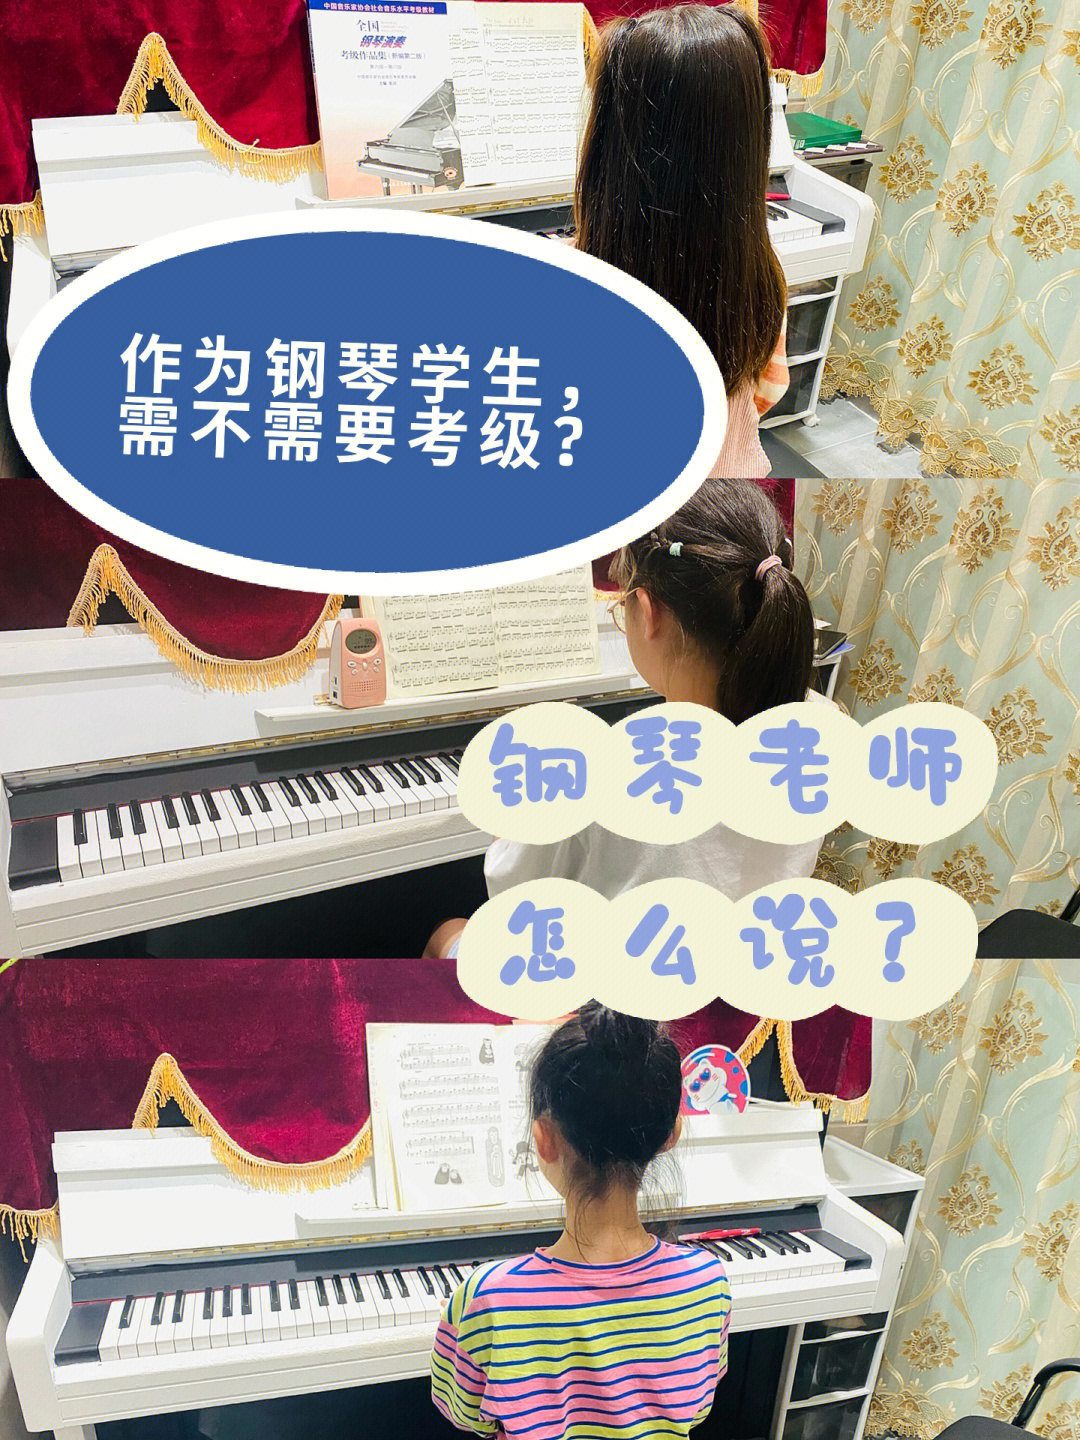 钢琴学习作为钢琴学生需不需要考级